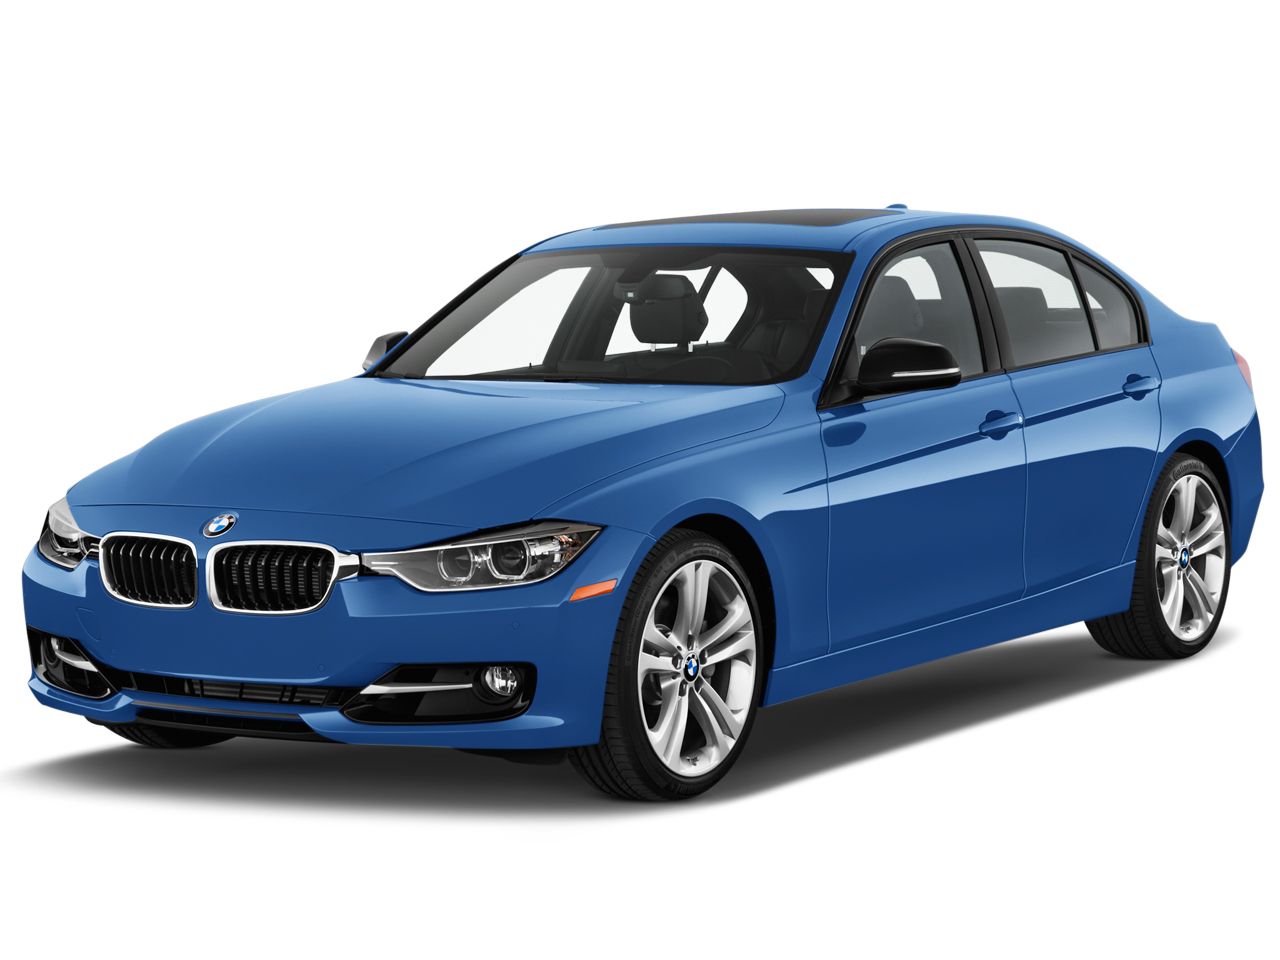 blue BMW PNG image, free download    图片编号:1710